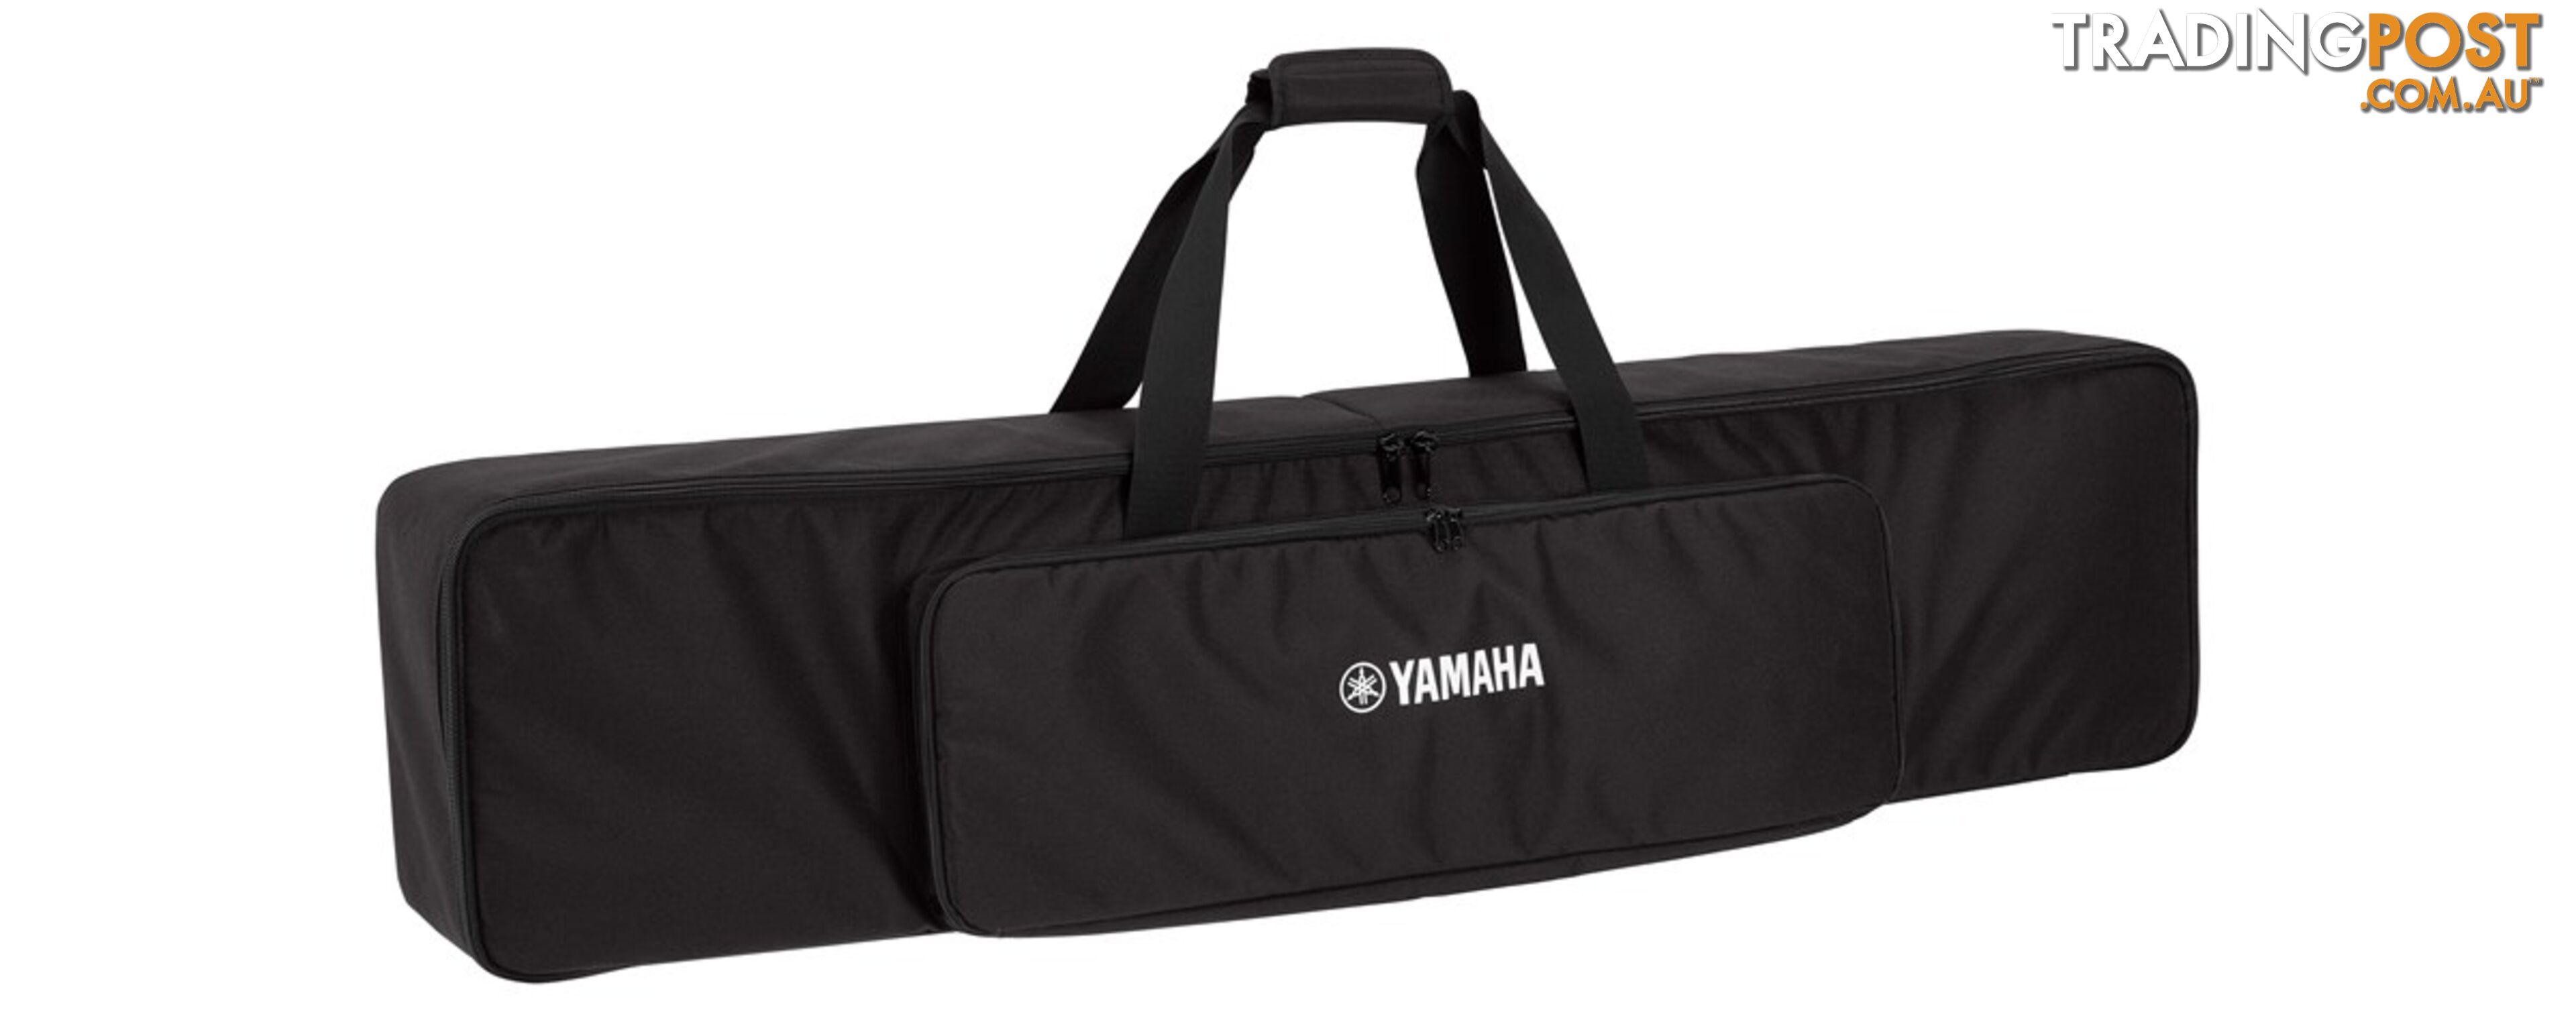 Soft Gig Bag Stand for Yamaha P Series P125, P225 Portable Digital Piano